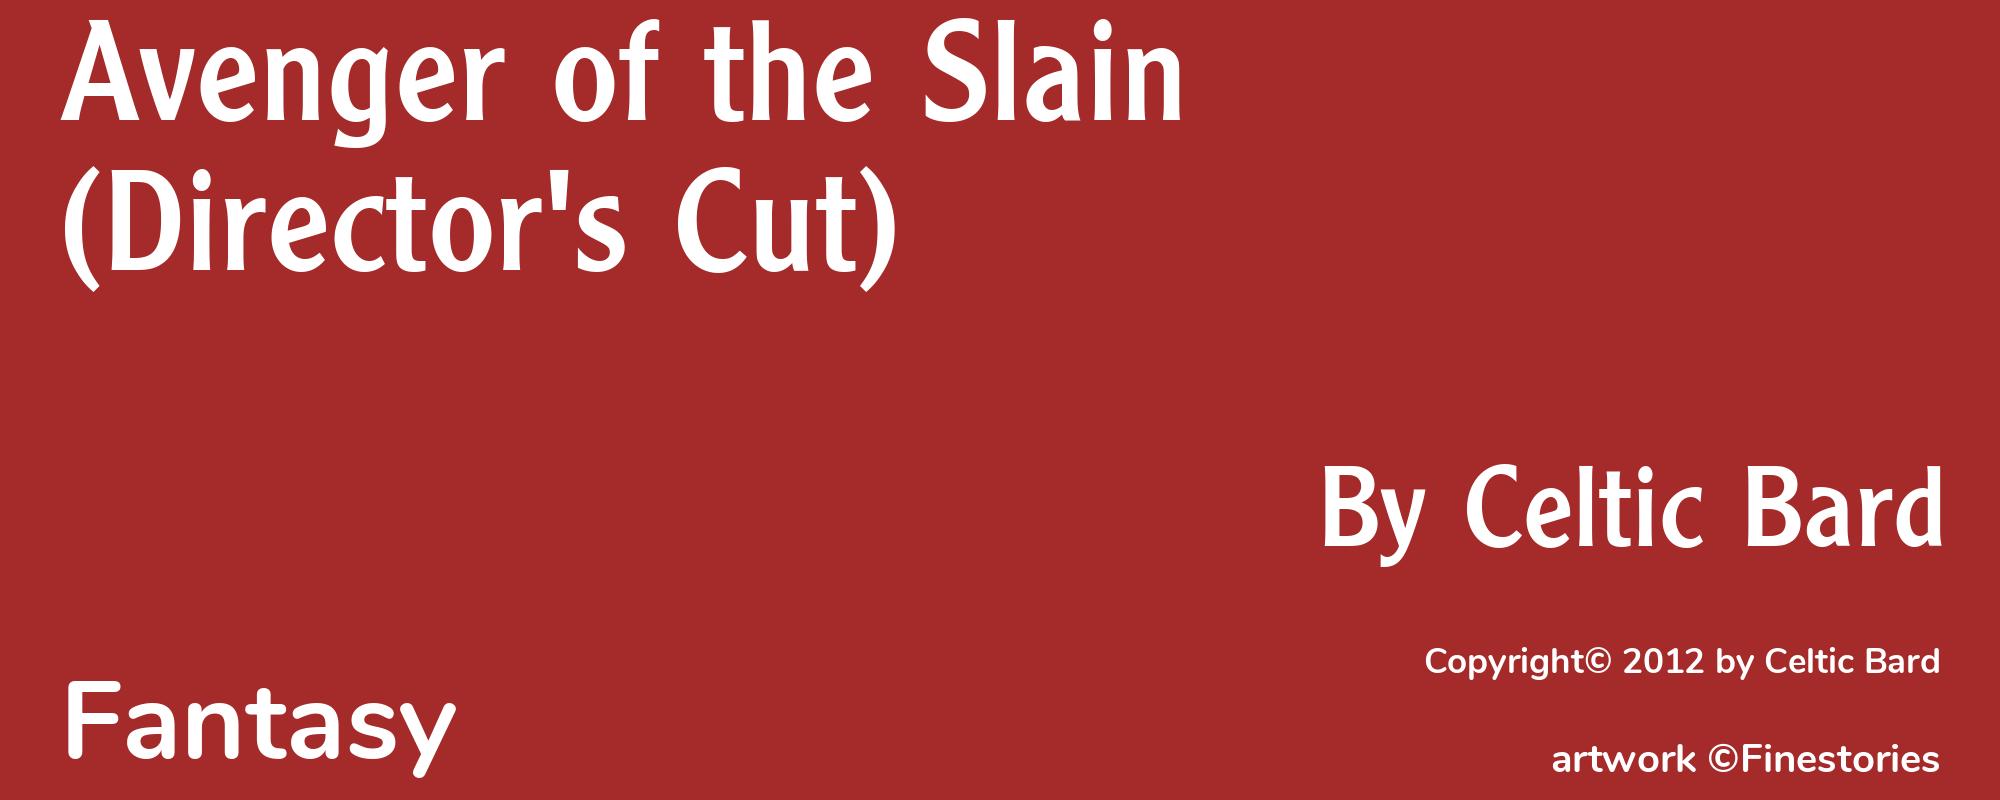 Avenger of the Slain (Director's Cut) - Cover